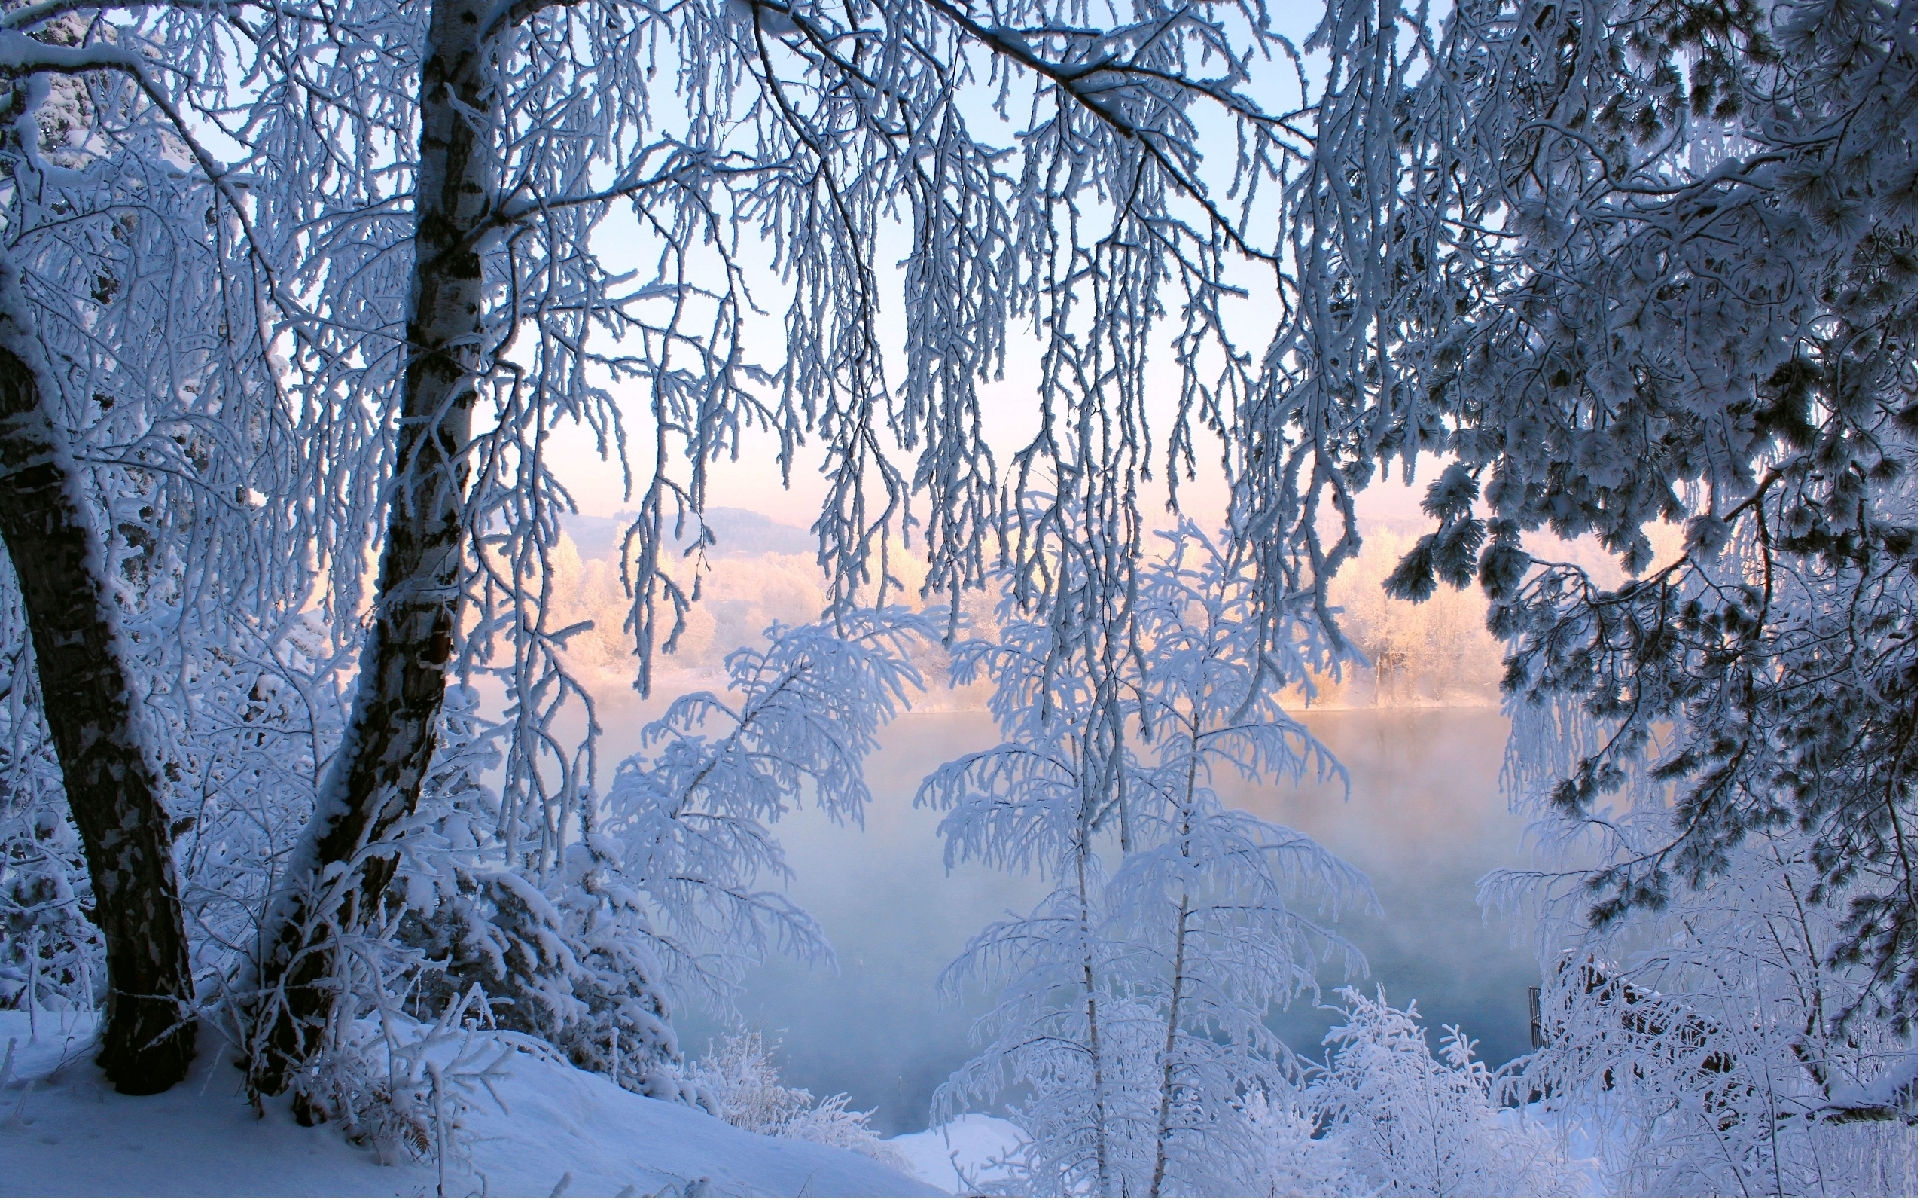 Скачать обои бесплатно Пейзаж, Зима картинка на рабочий стол ПК